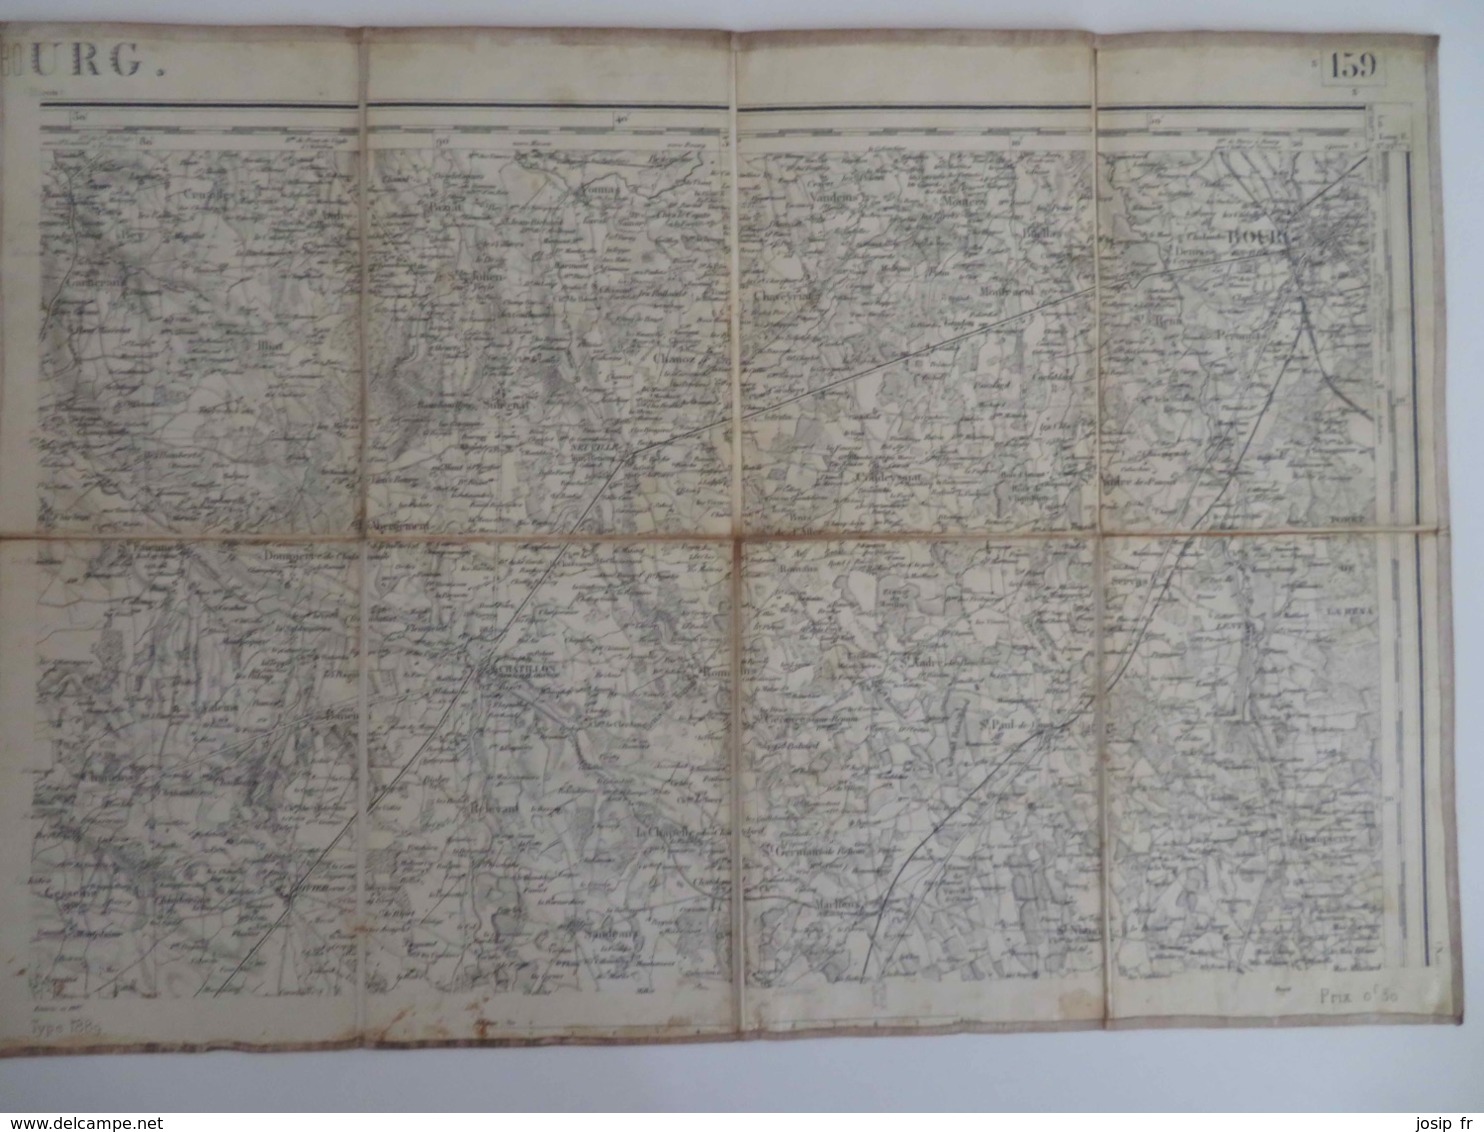 CARTE D'ETAT-MAJOR BOURG NORD-EST 1/80000 TYPE 1889 REVISION 1897 COLLÉE SUR TOILE- BOURG-EN-BRESSE EN HAUT À DROITE - Topographical Maps